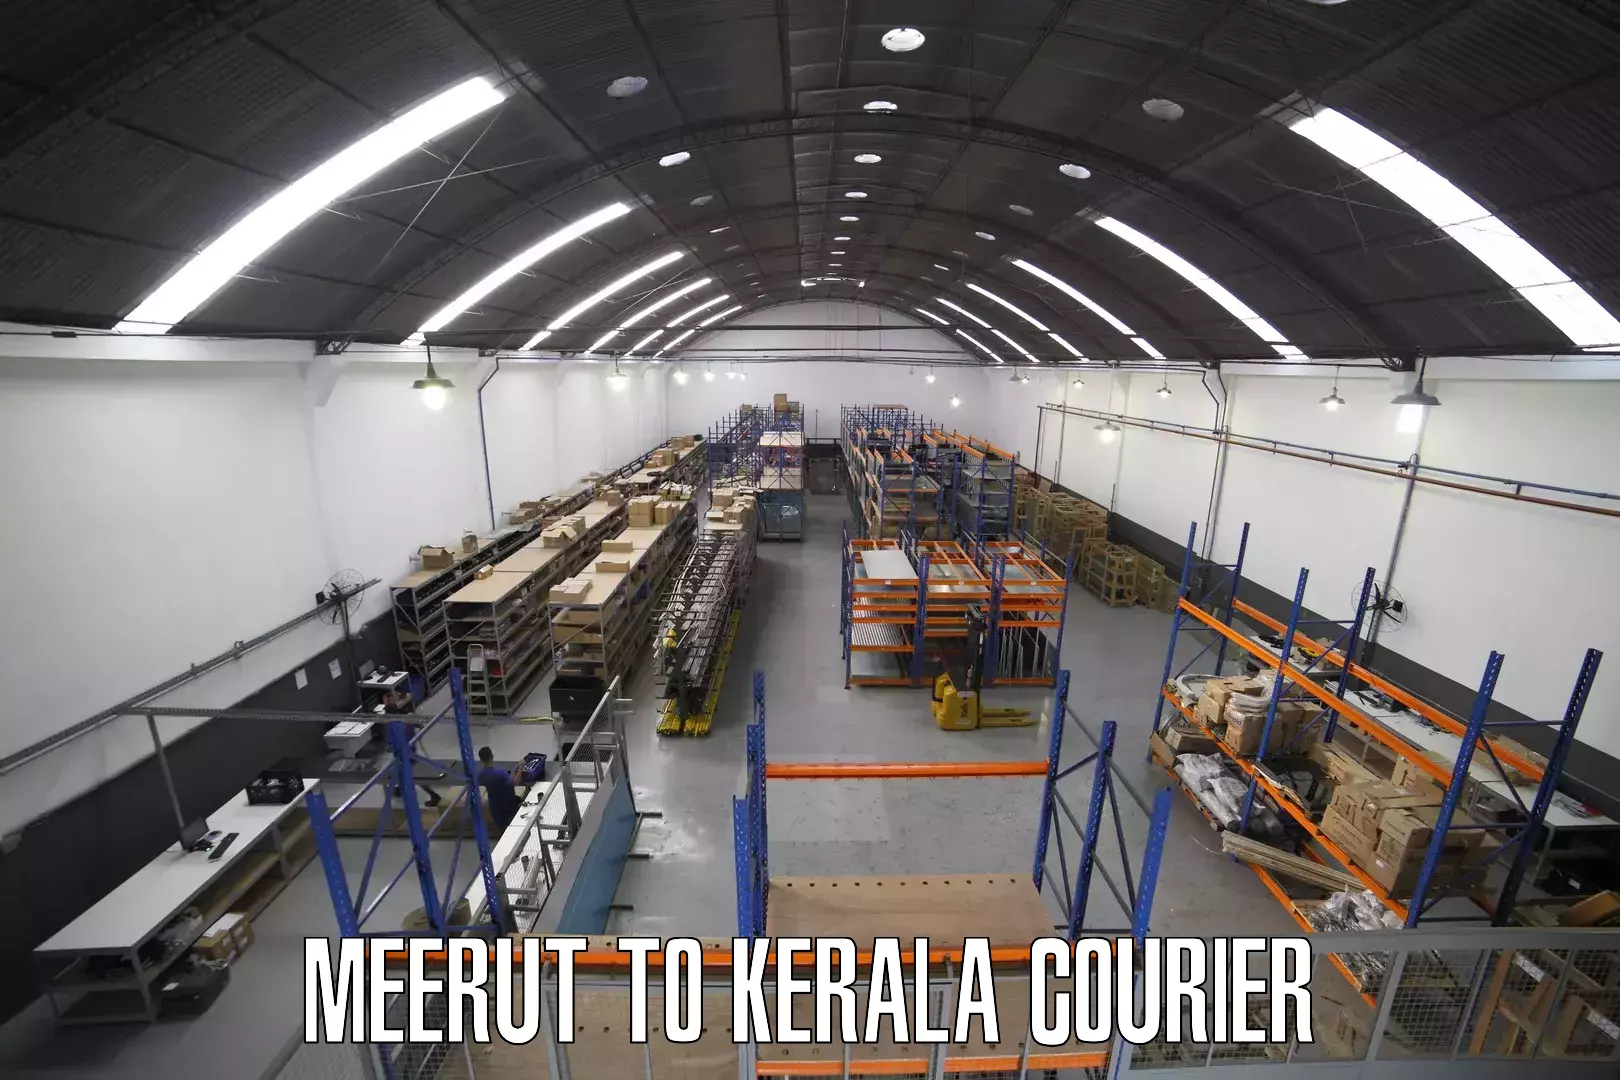 International courier networks Meerut to Adoor